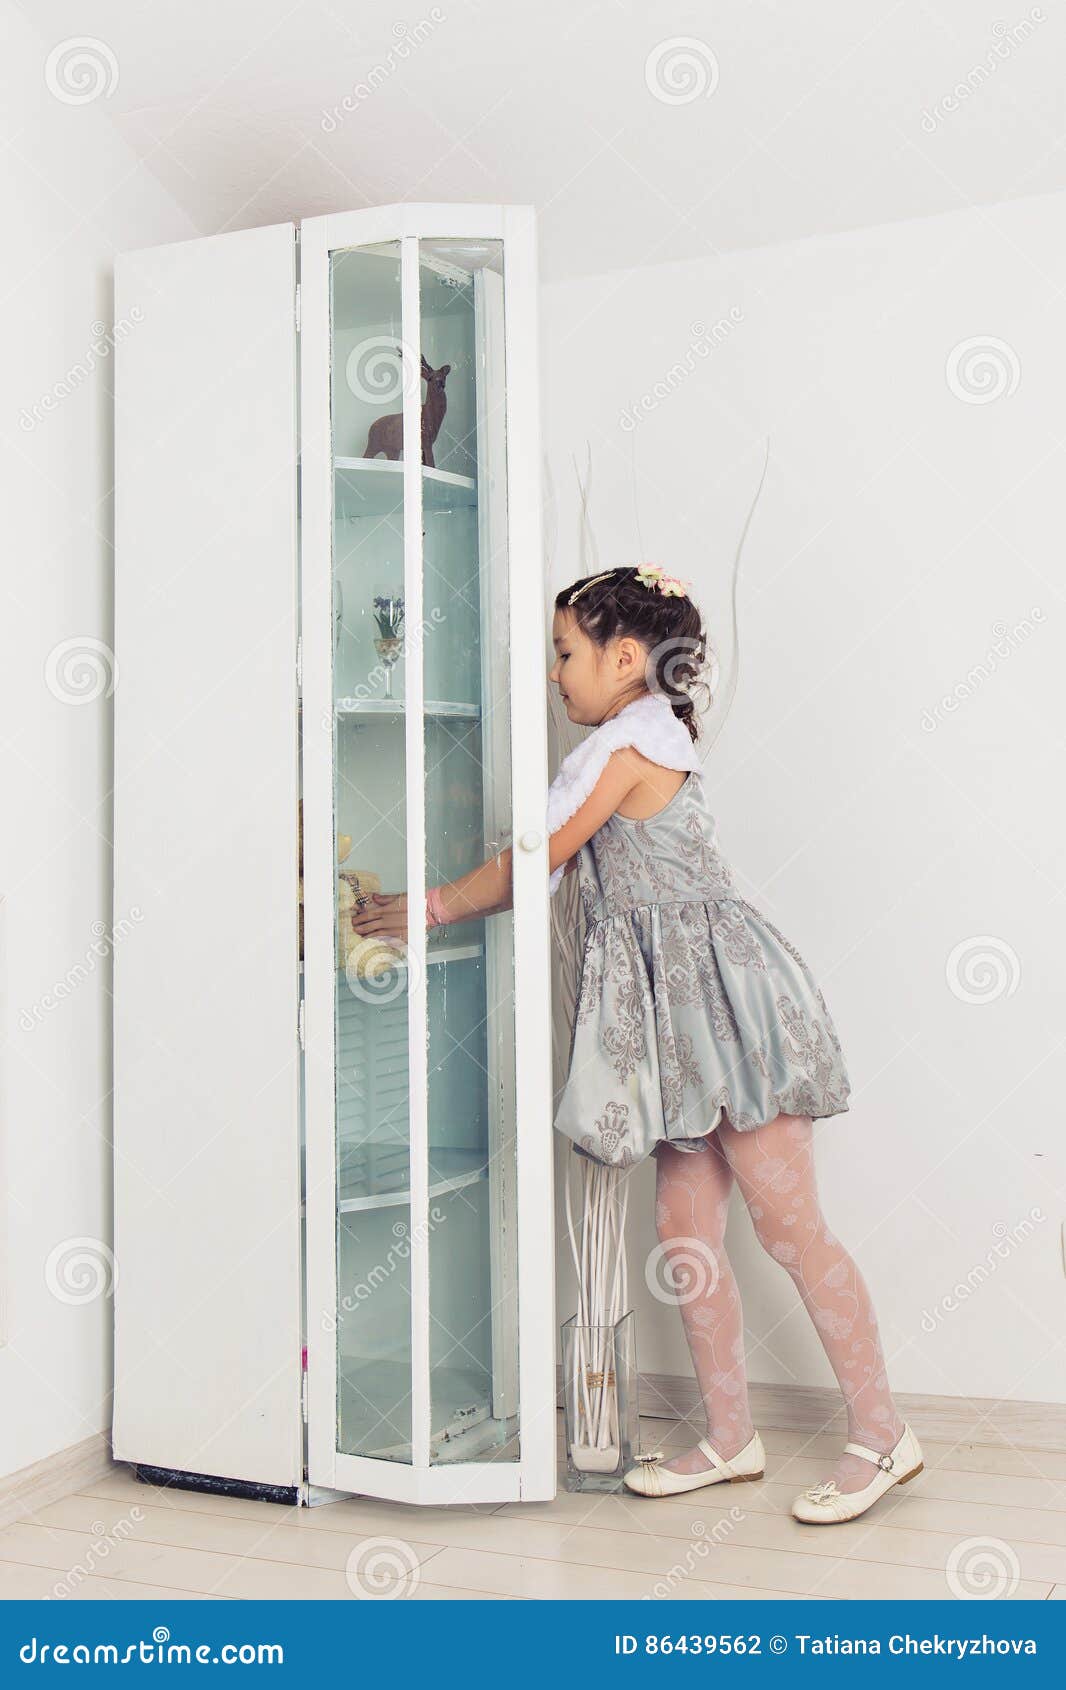 Дверях кати открывал. Маленькая девочка в шкафу. Шкаф для девочки. Девочка открывает шкаф. Девушка открывает шкаф.